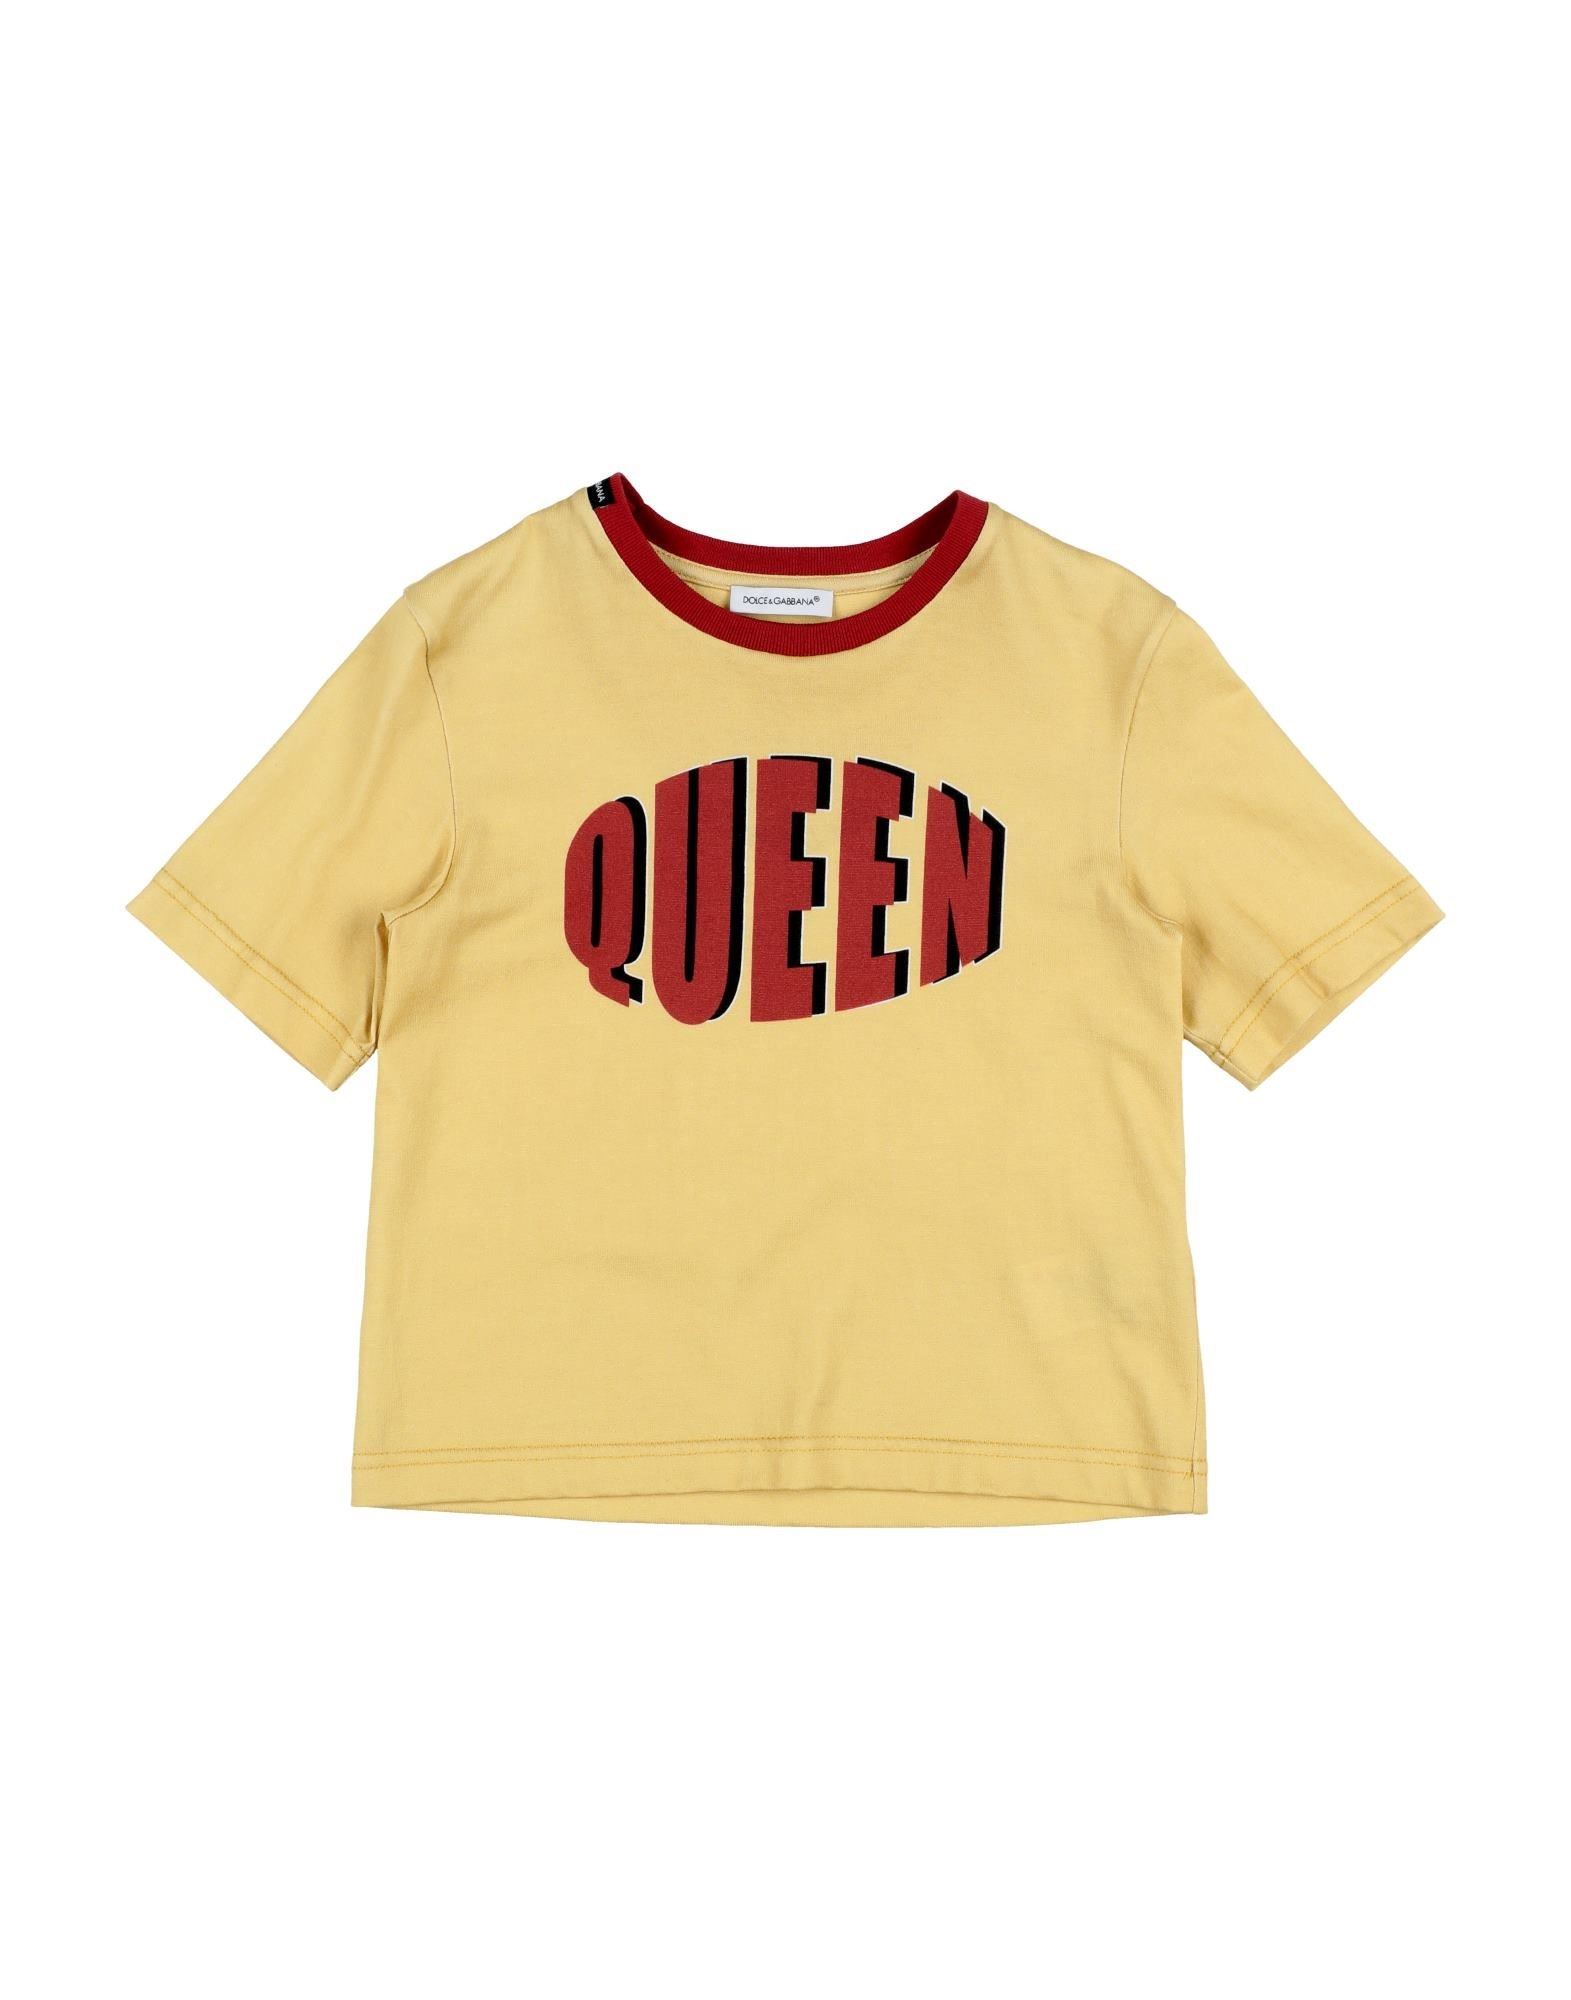 Dolce & Gabbana Kids' T-shirts In Yellow